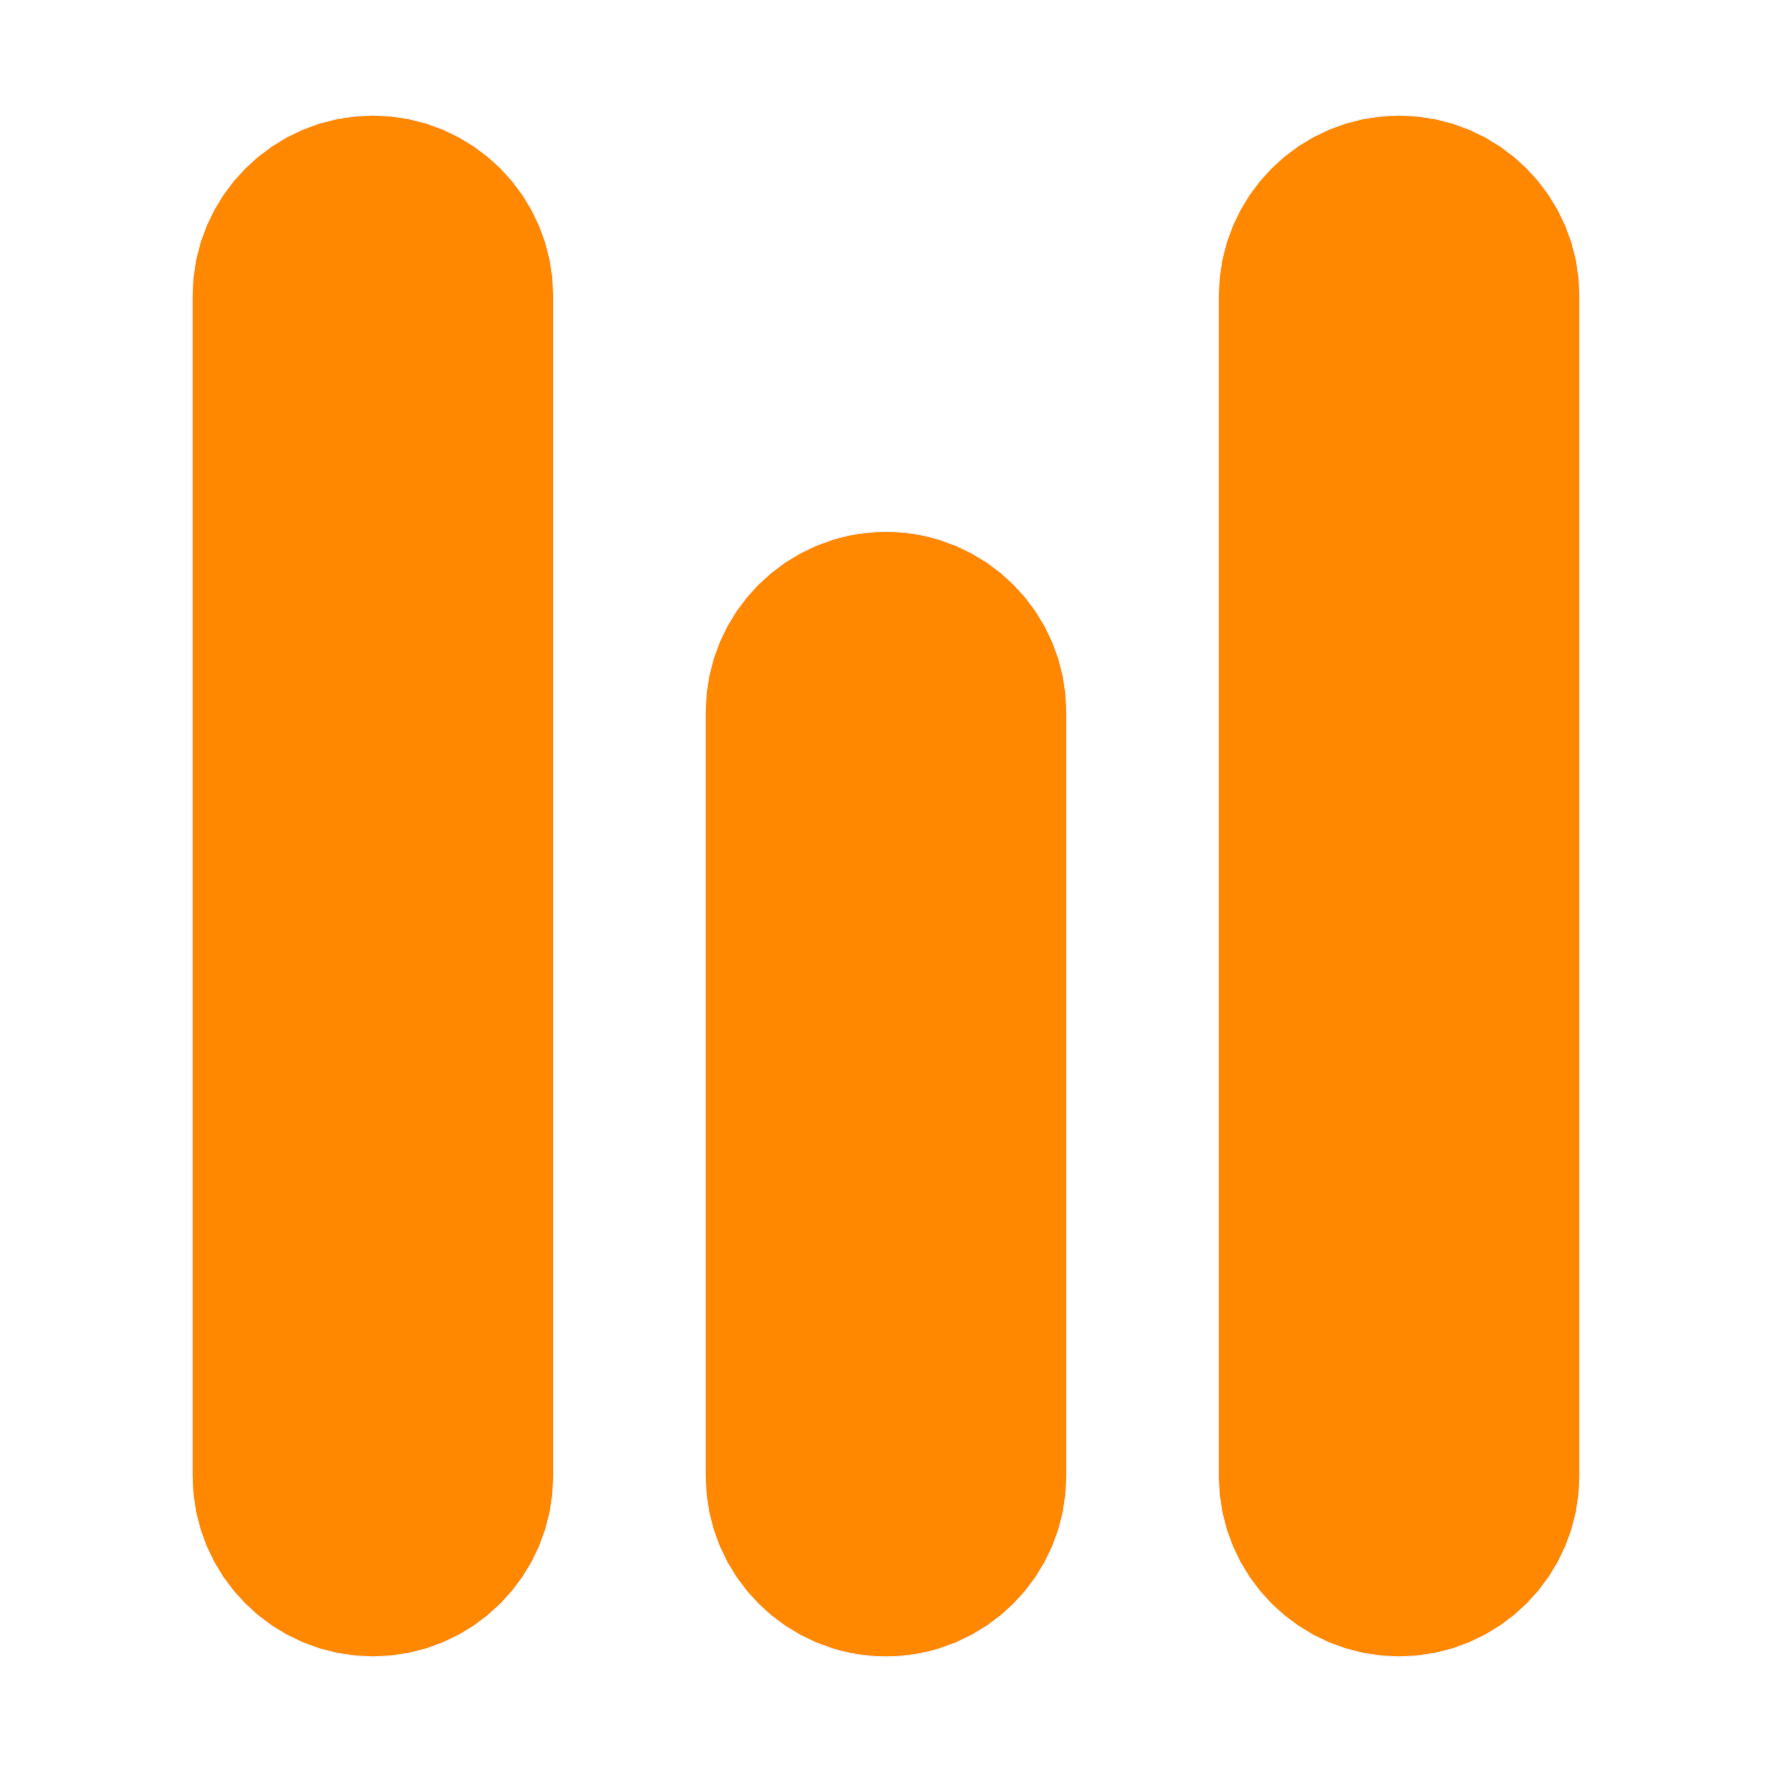 Das Logo von Michael Wildt besteht aus drei nebeneinander abgerundeten orangen senkrechten Balken auf weißem Grund, wobei der mittlere Balken kürzer ist.